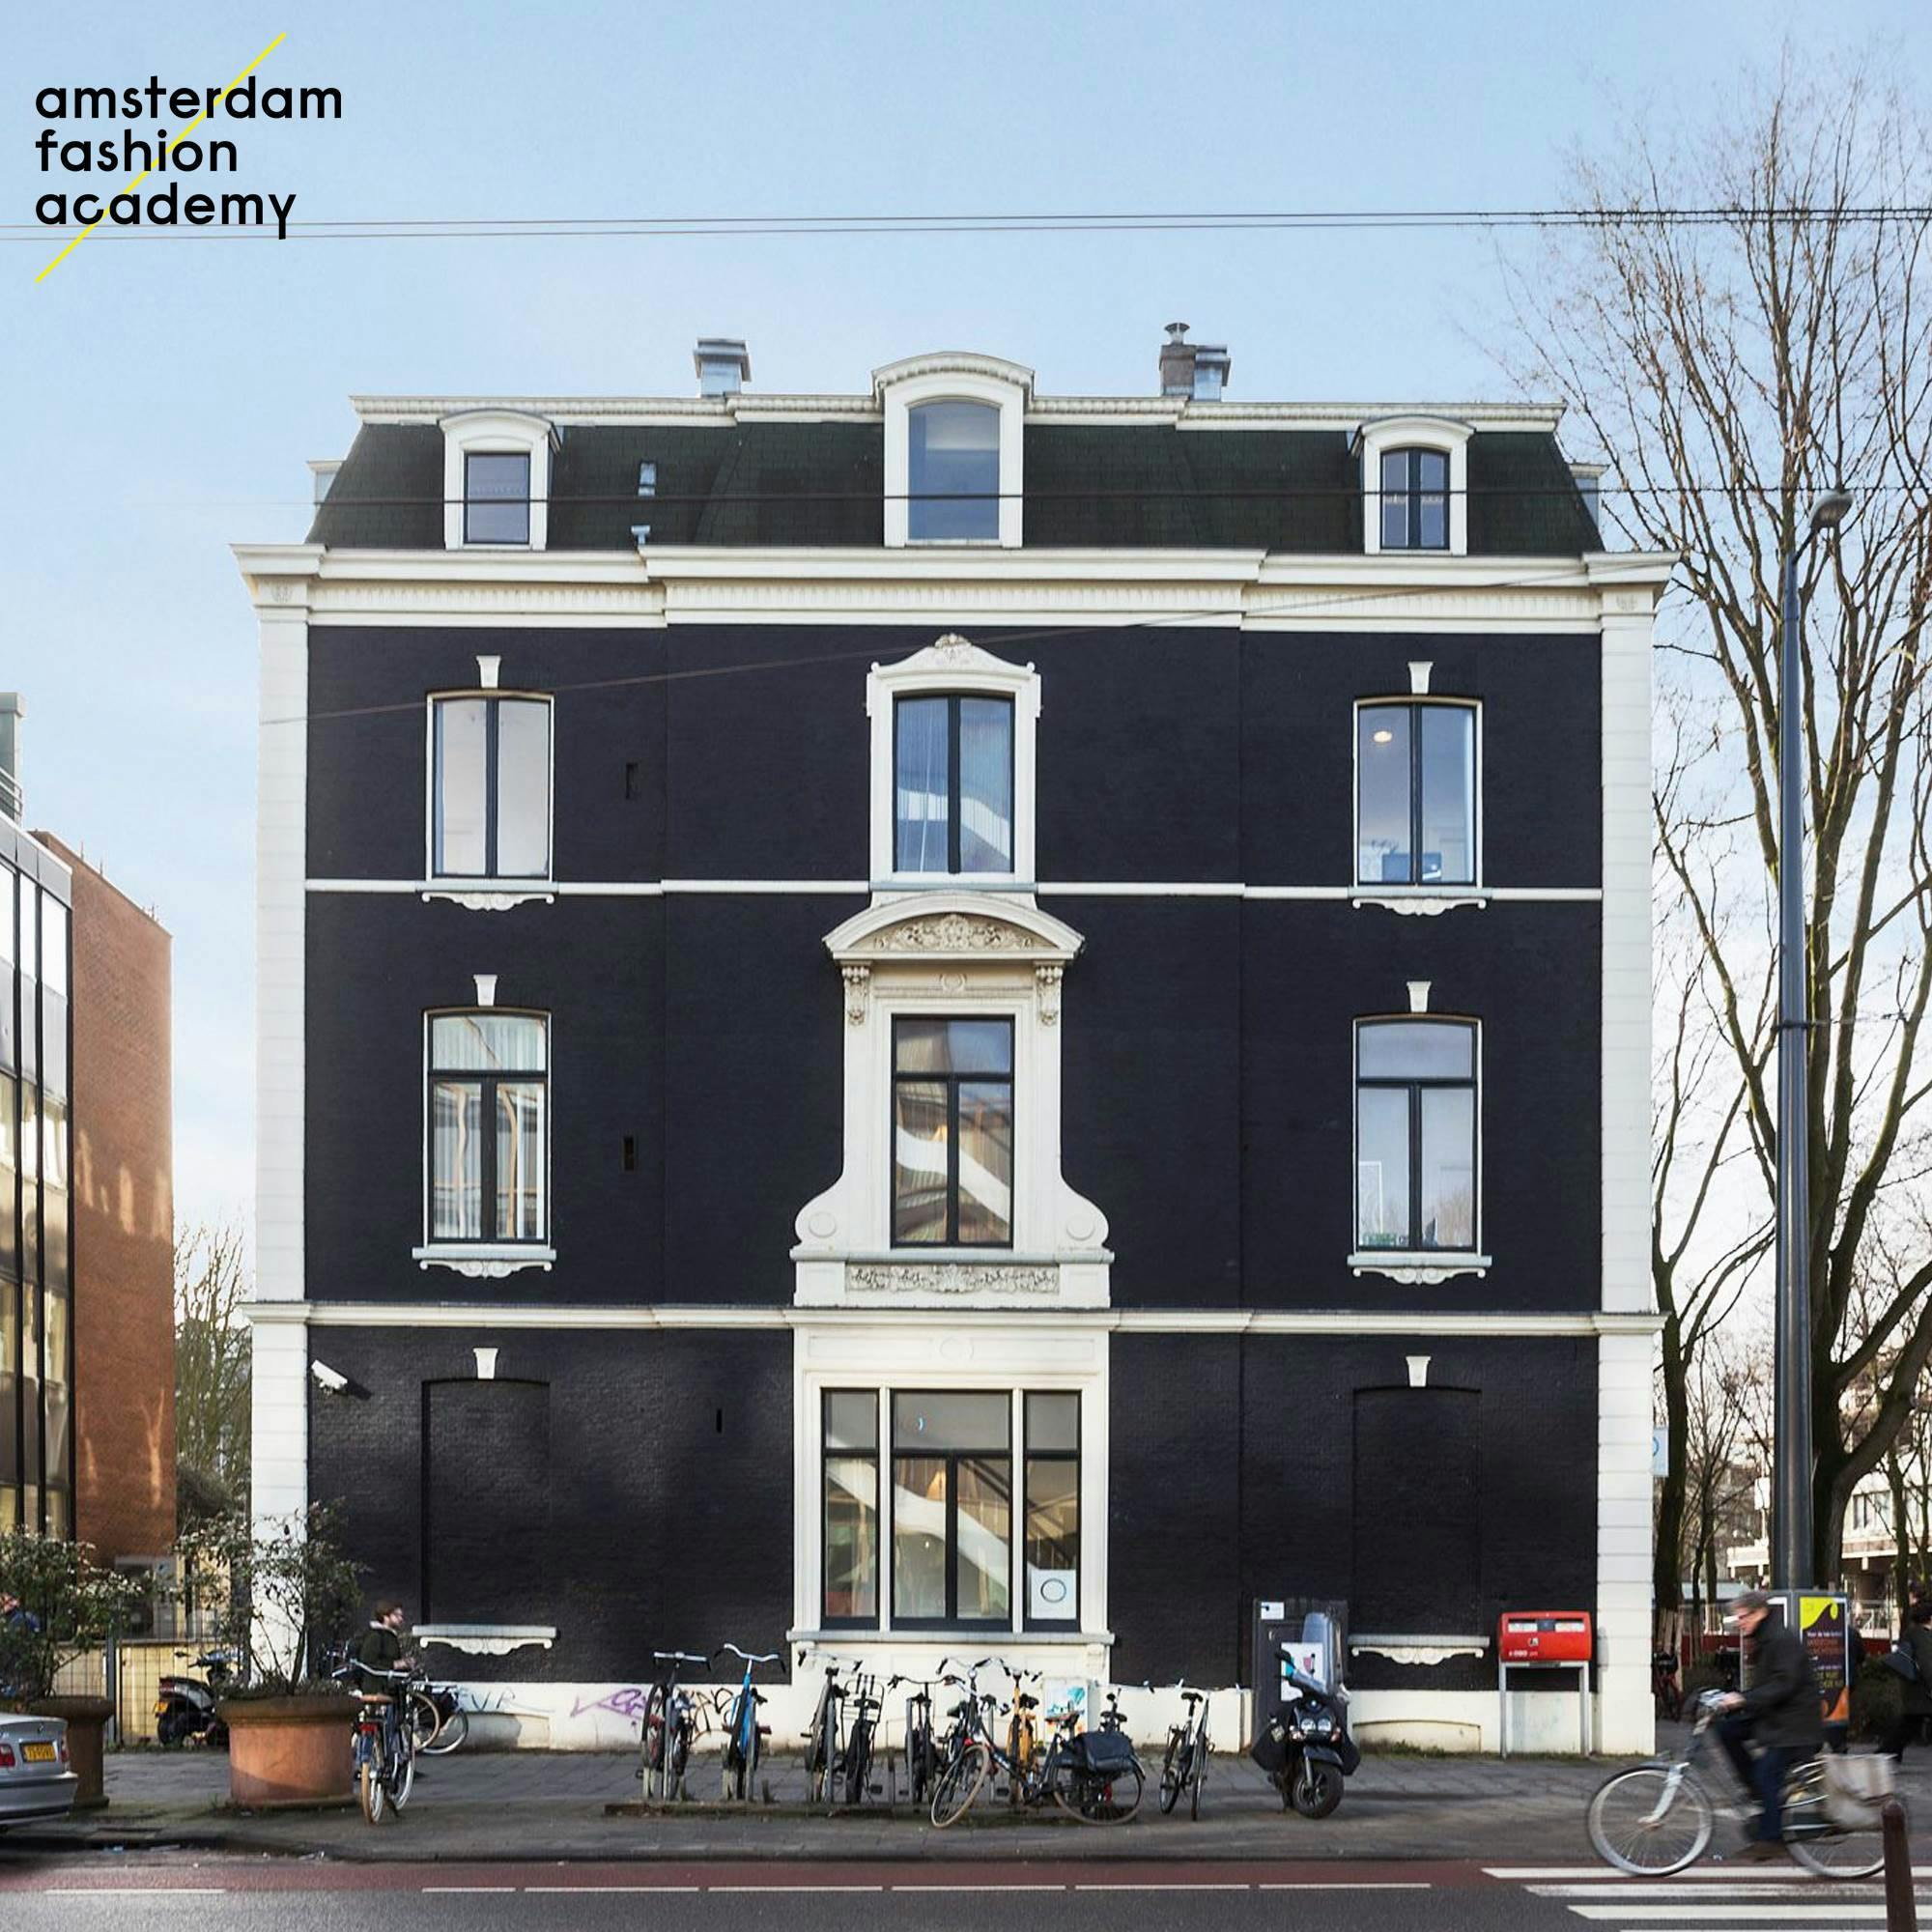 The Amsterdam Fashion Academy